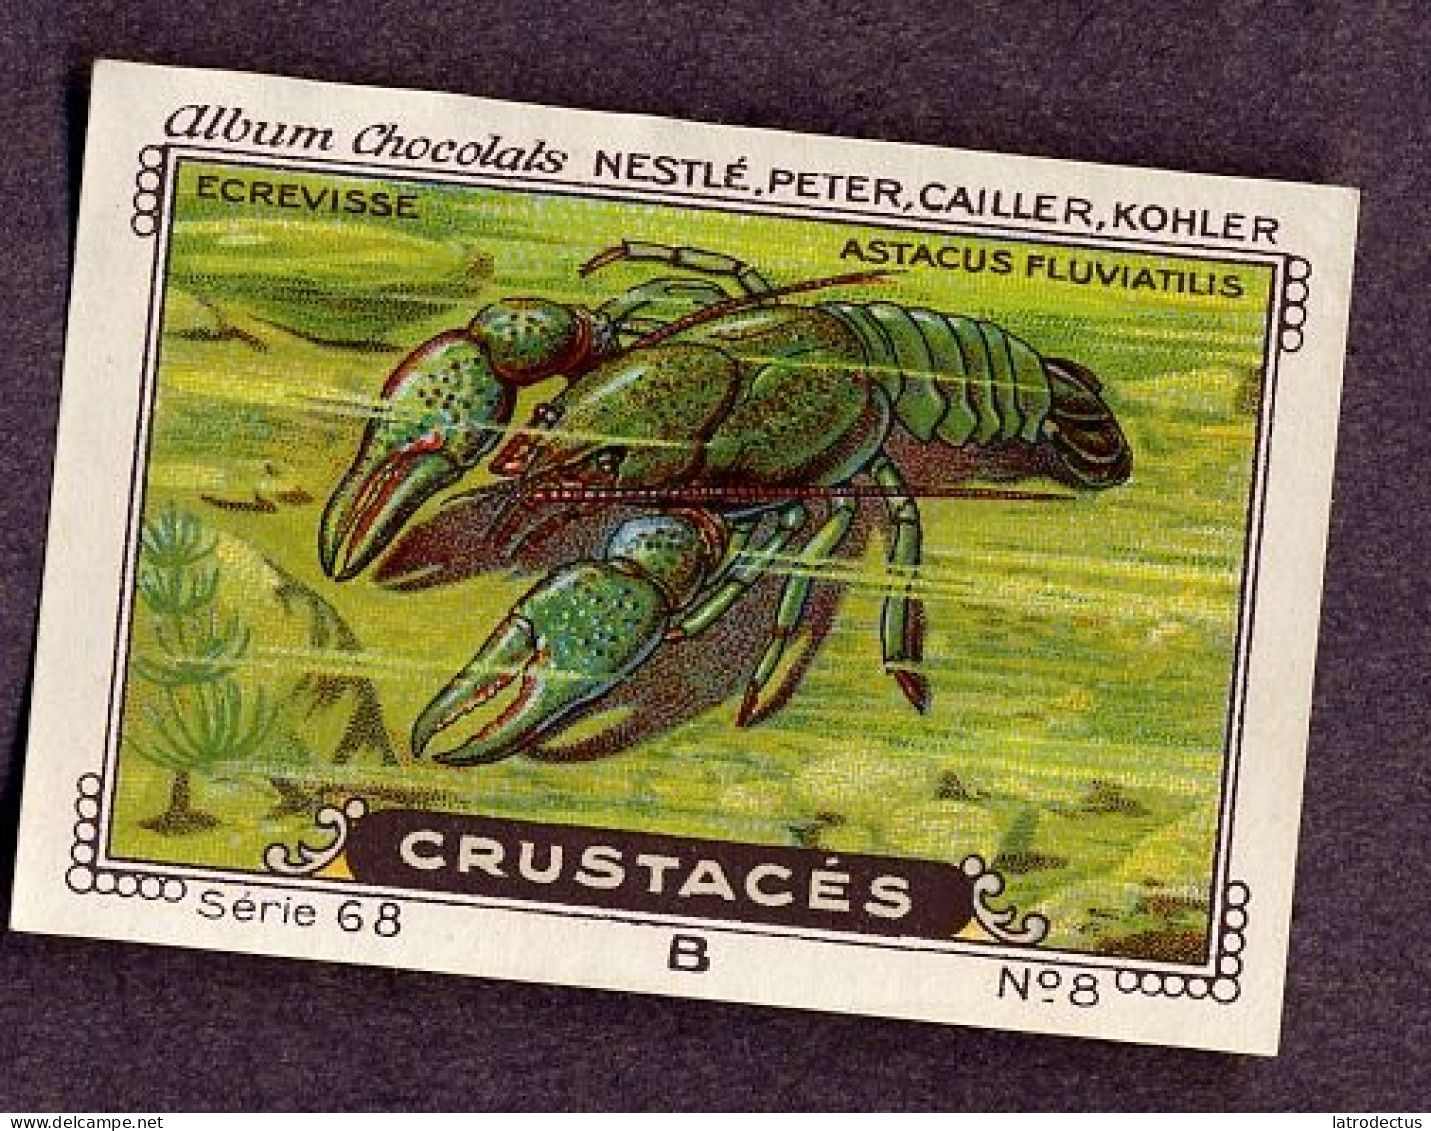 Nestlé - 68B - Crustacés, Crustacea, Crustaceans - 8 - Ecrevisse, Crayfish - Nestlé